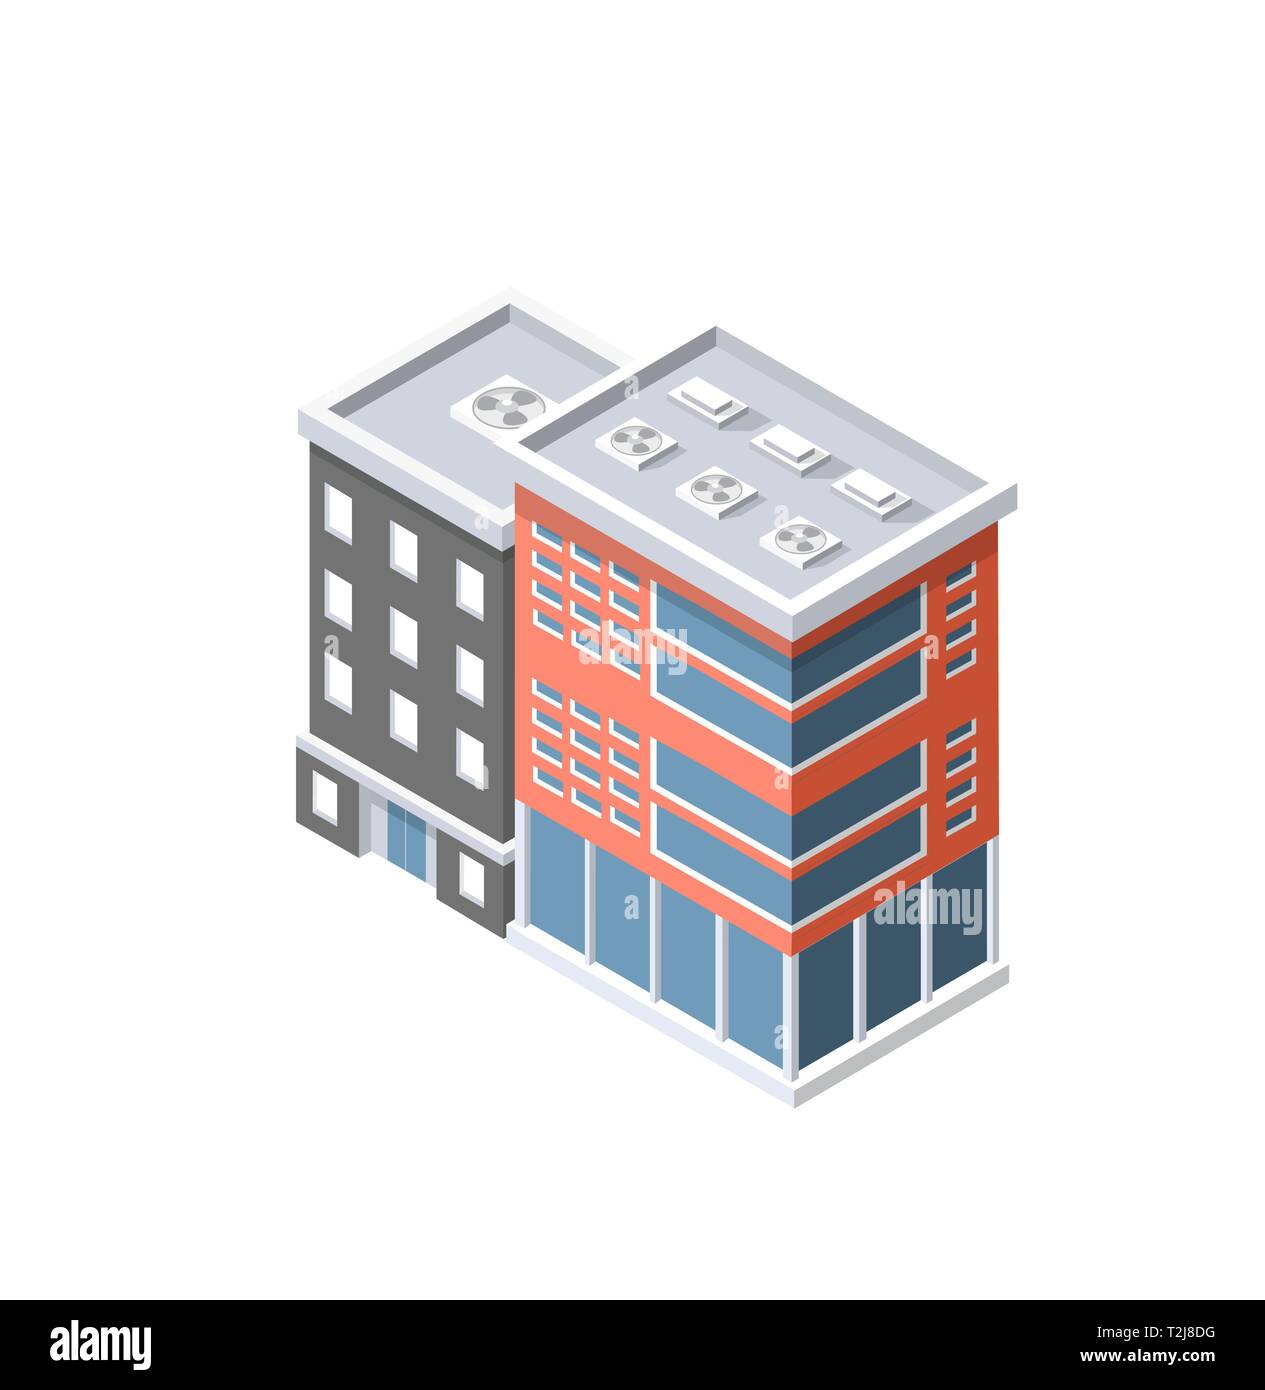 Die Smart Building home Architektur ist eine Idee der Technologie Business Equipment Flat Style urban isometrische Darstellung Stock Vektor